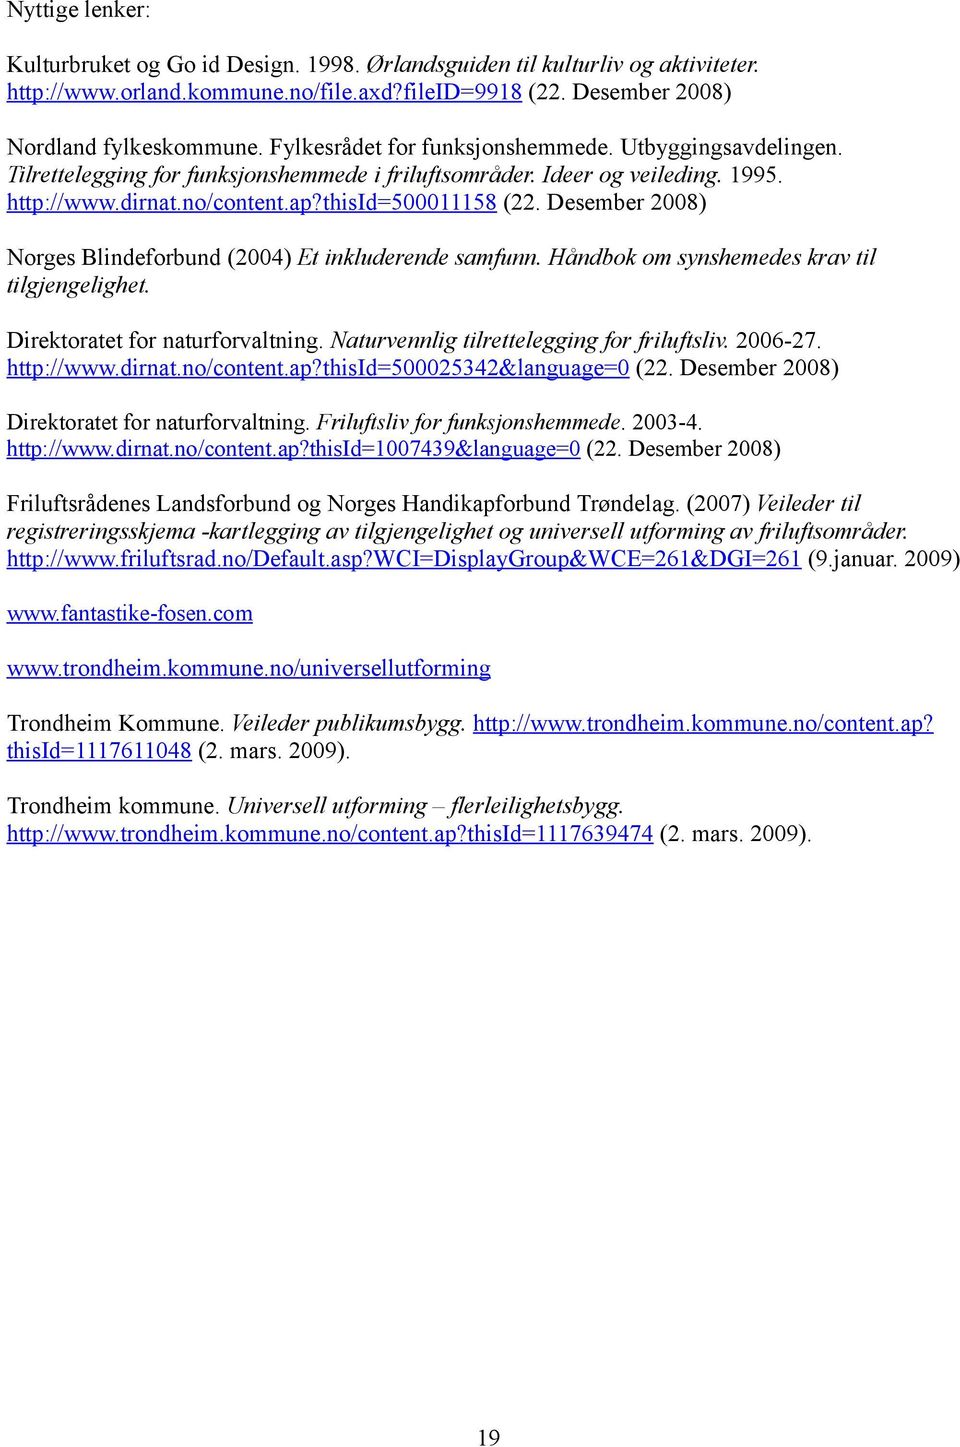 Desember 2008) Norges Blindeforbund (2004) Et inkluderende samfunn. Håndbok om synshemedes krav til tilgjengelighet. Direktoratet for naturforvaltning. Naturvennlig tilrettelegging for friluftsliv.